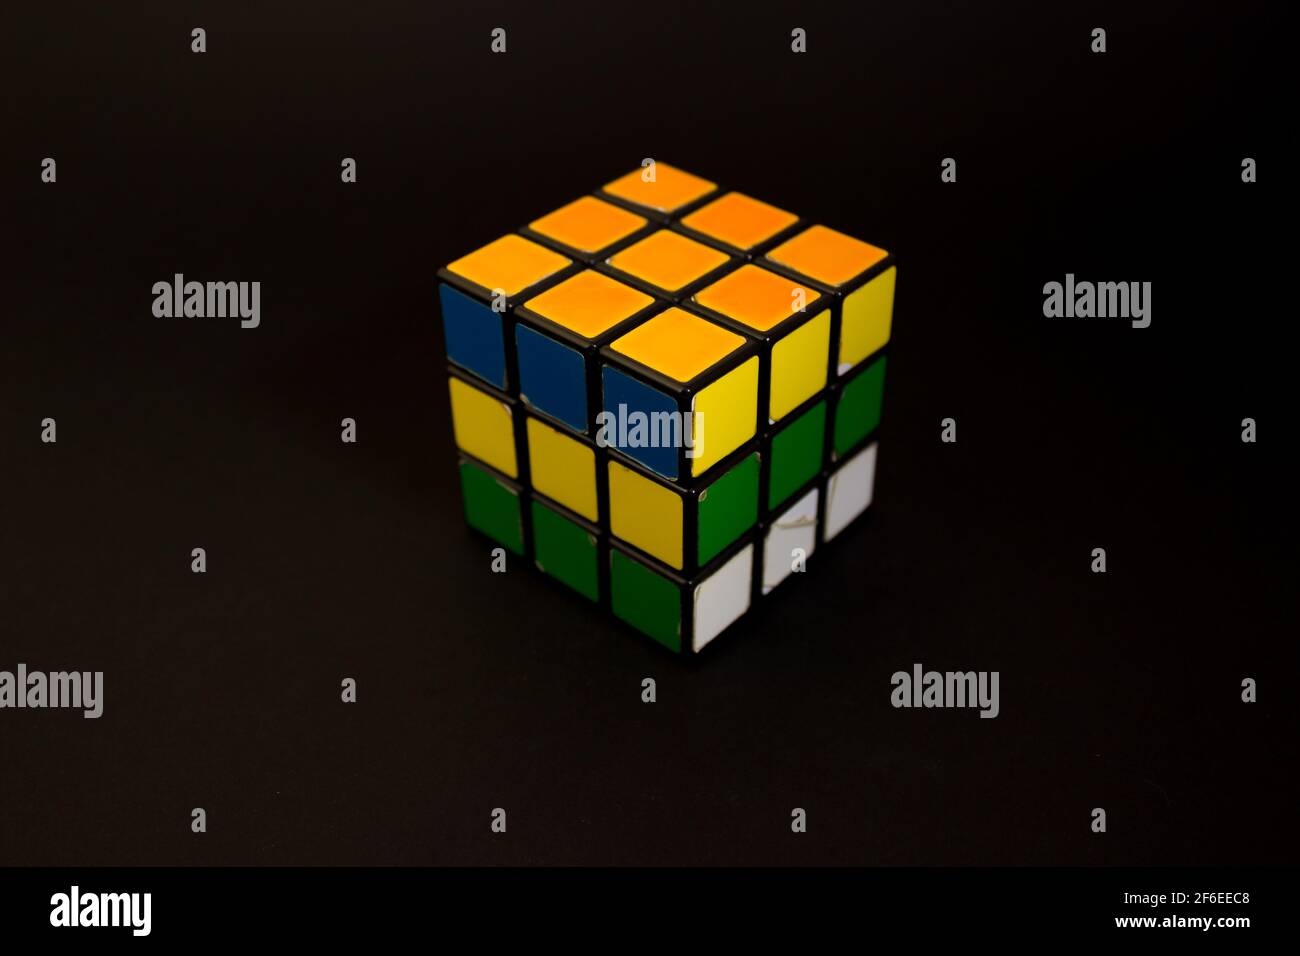 Avola, Italien - März 31st 2021: Nahaufnahme eines Rubik-Würfels auf schwarzem Hintergrund nicht gelöst. Rubik's Cube erfunden von einem ungarischen Architekten Erno Rub Stockfoto